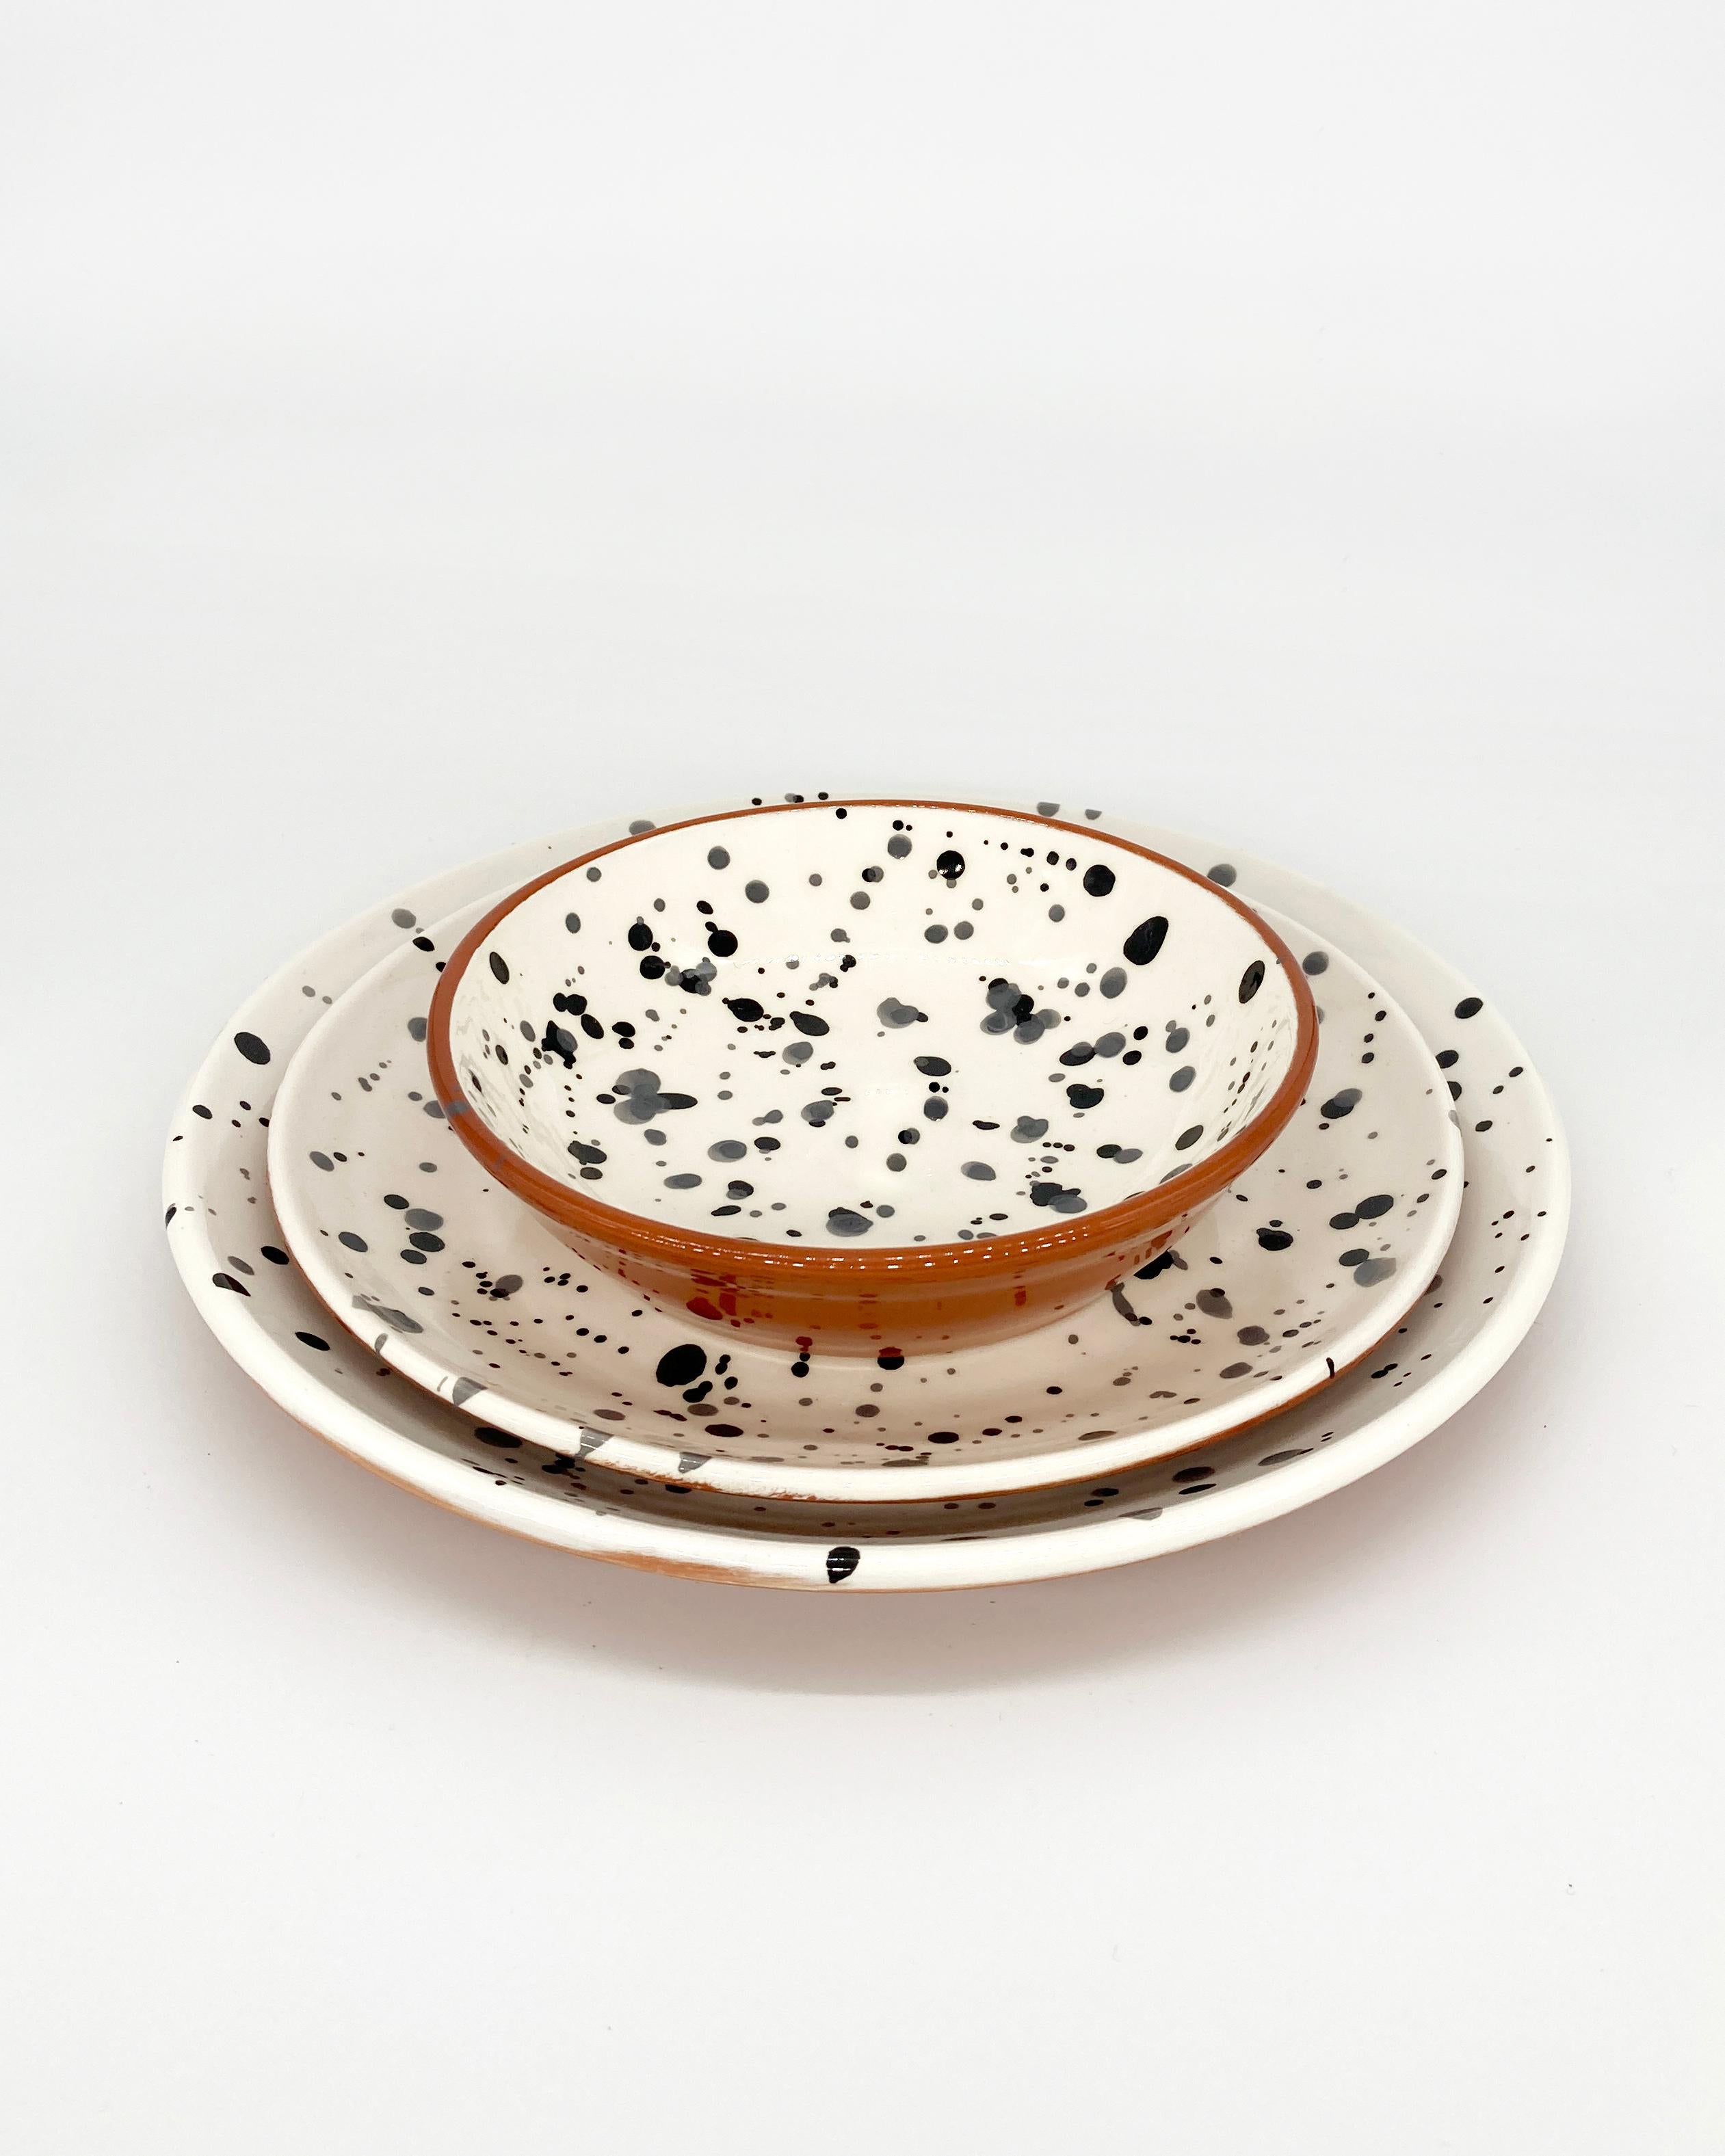 Rustic Handmade Black and White Terra Cotta Dot Pattern Dinner Plates, in Stock For Sale